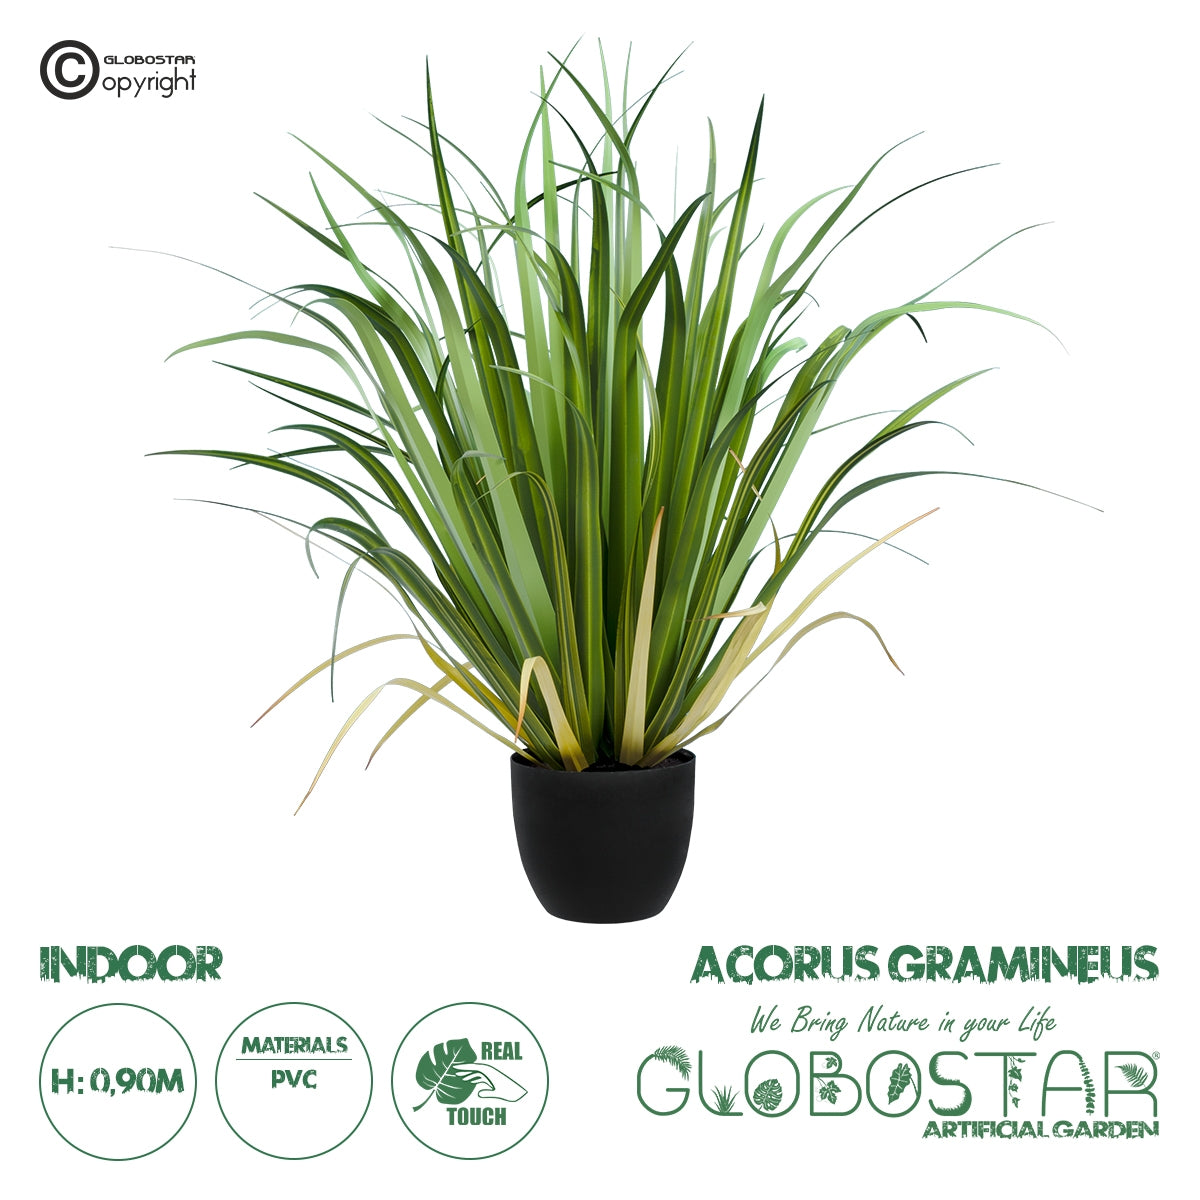 GloboStar® Artificial Garden ACORUS GRAMINEUS 20103 Τεχνητό Διακοσμητικό Φυτό Άκορος Υ90cm